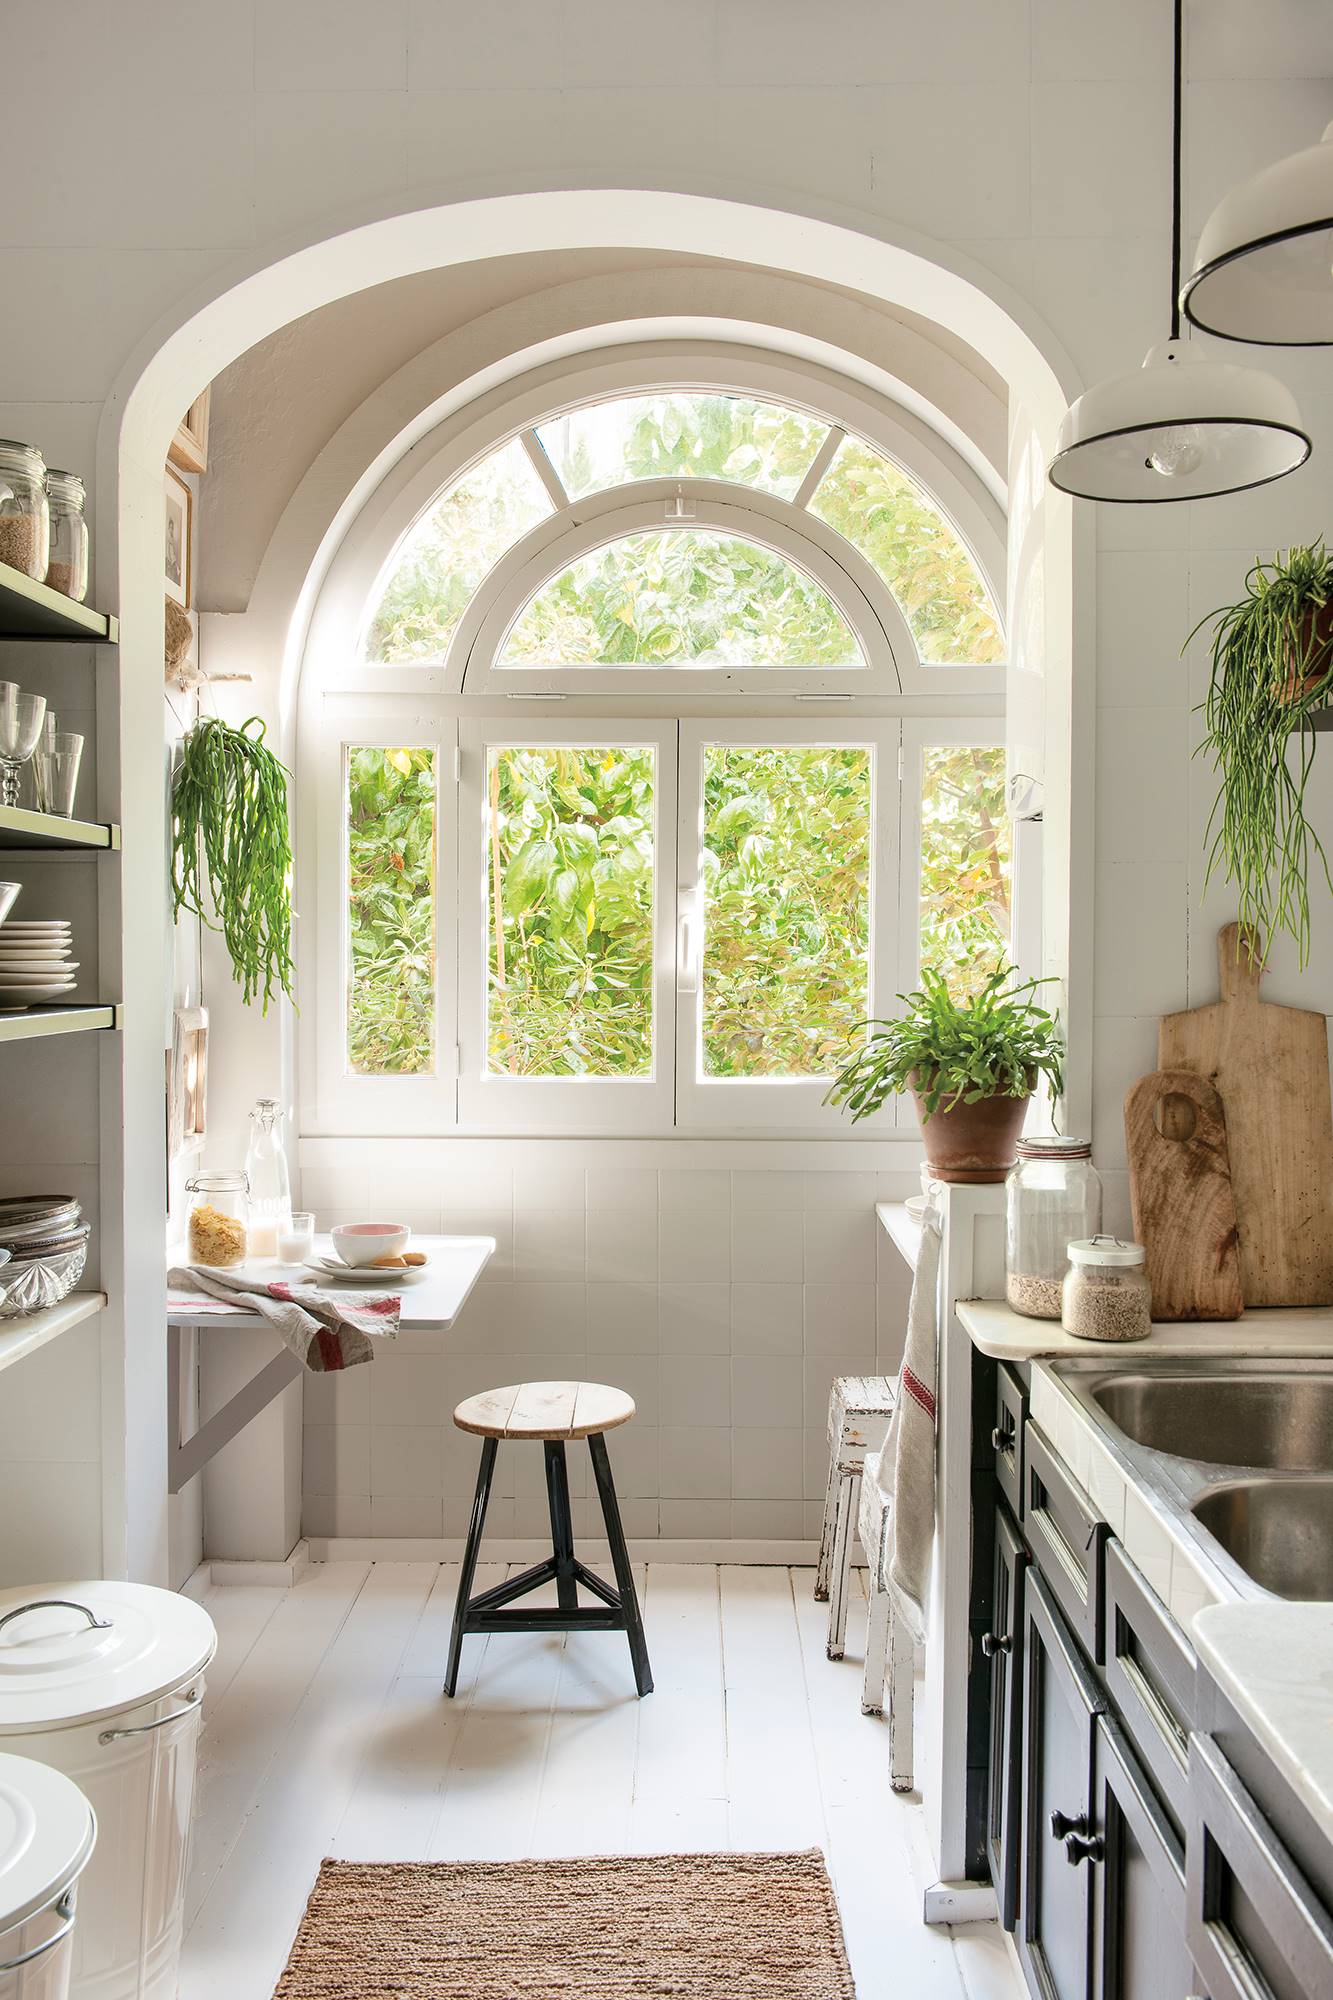 Cocina blanca con gran ventanal en forma de arco y muebles de cocina en negro.